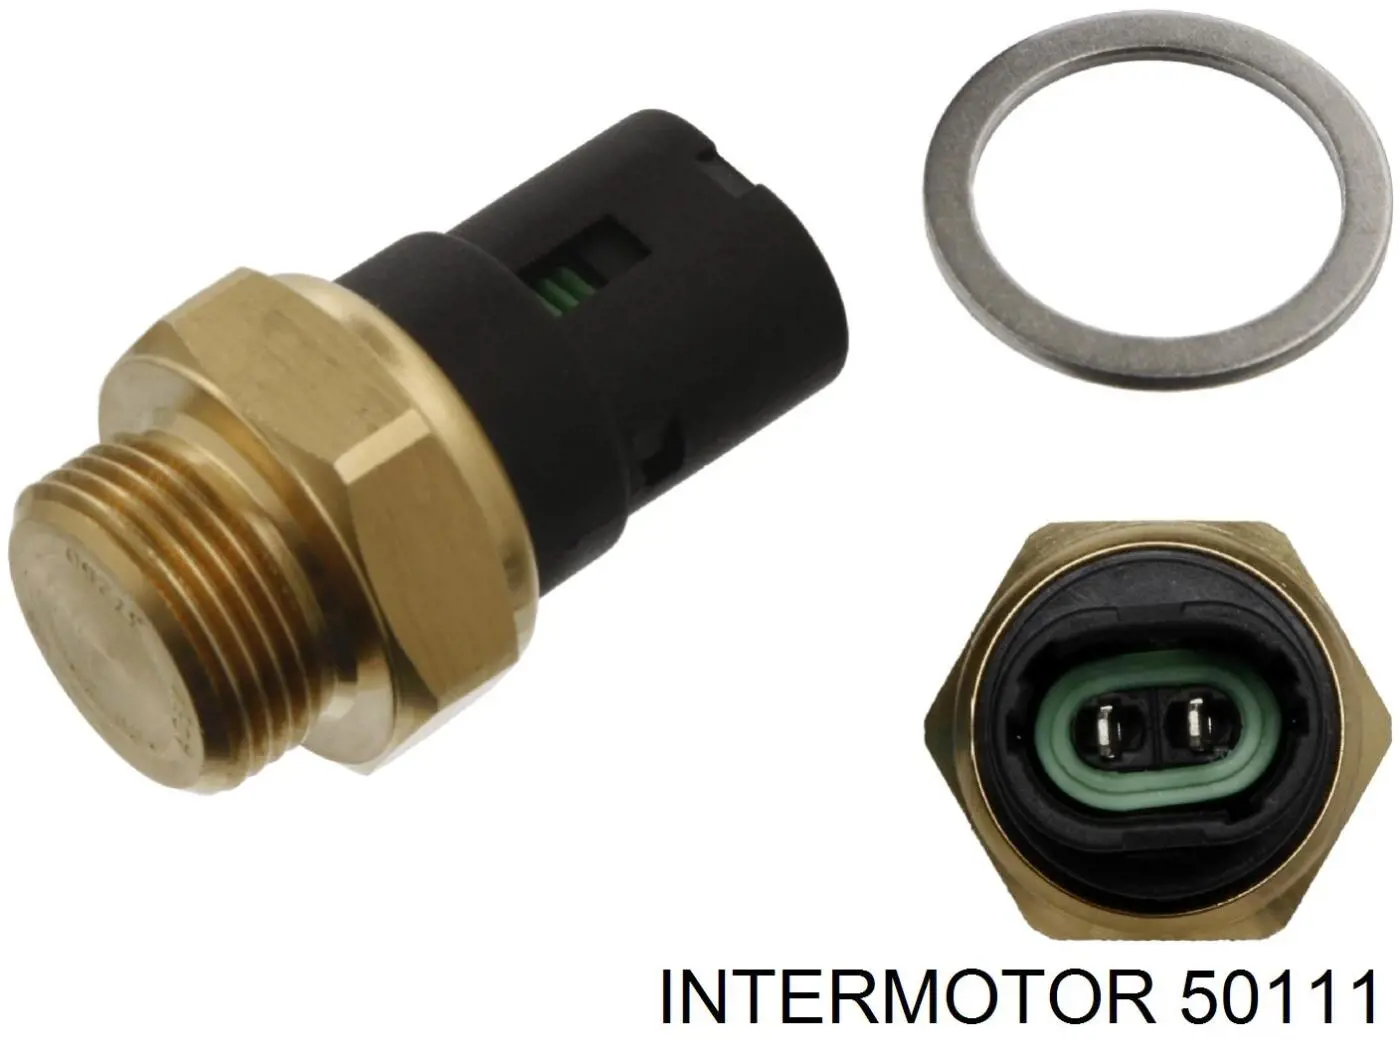 50111 Intermotor датчик температуры охлаждающей жидкости (включения вентилятора радиатора)